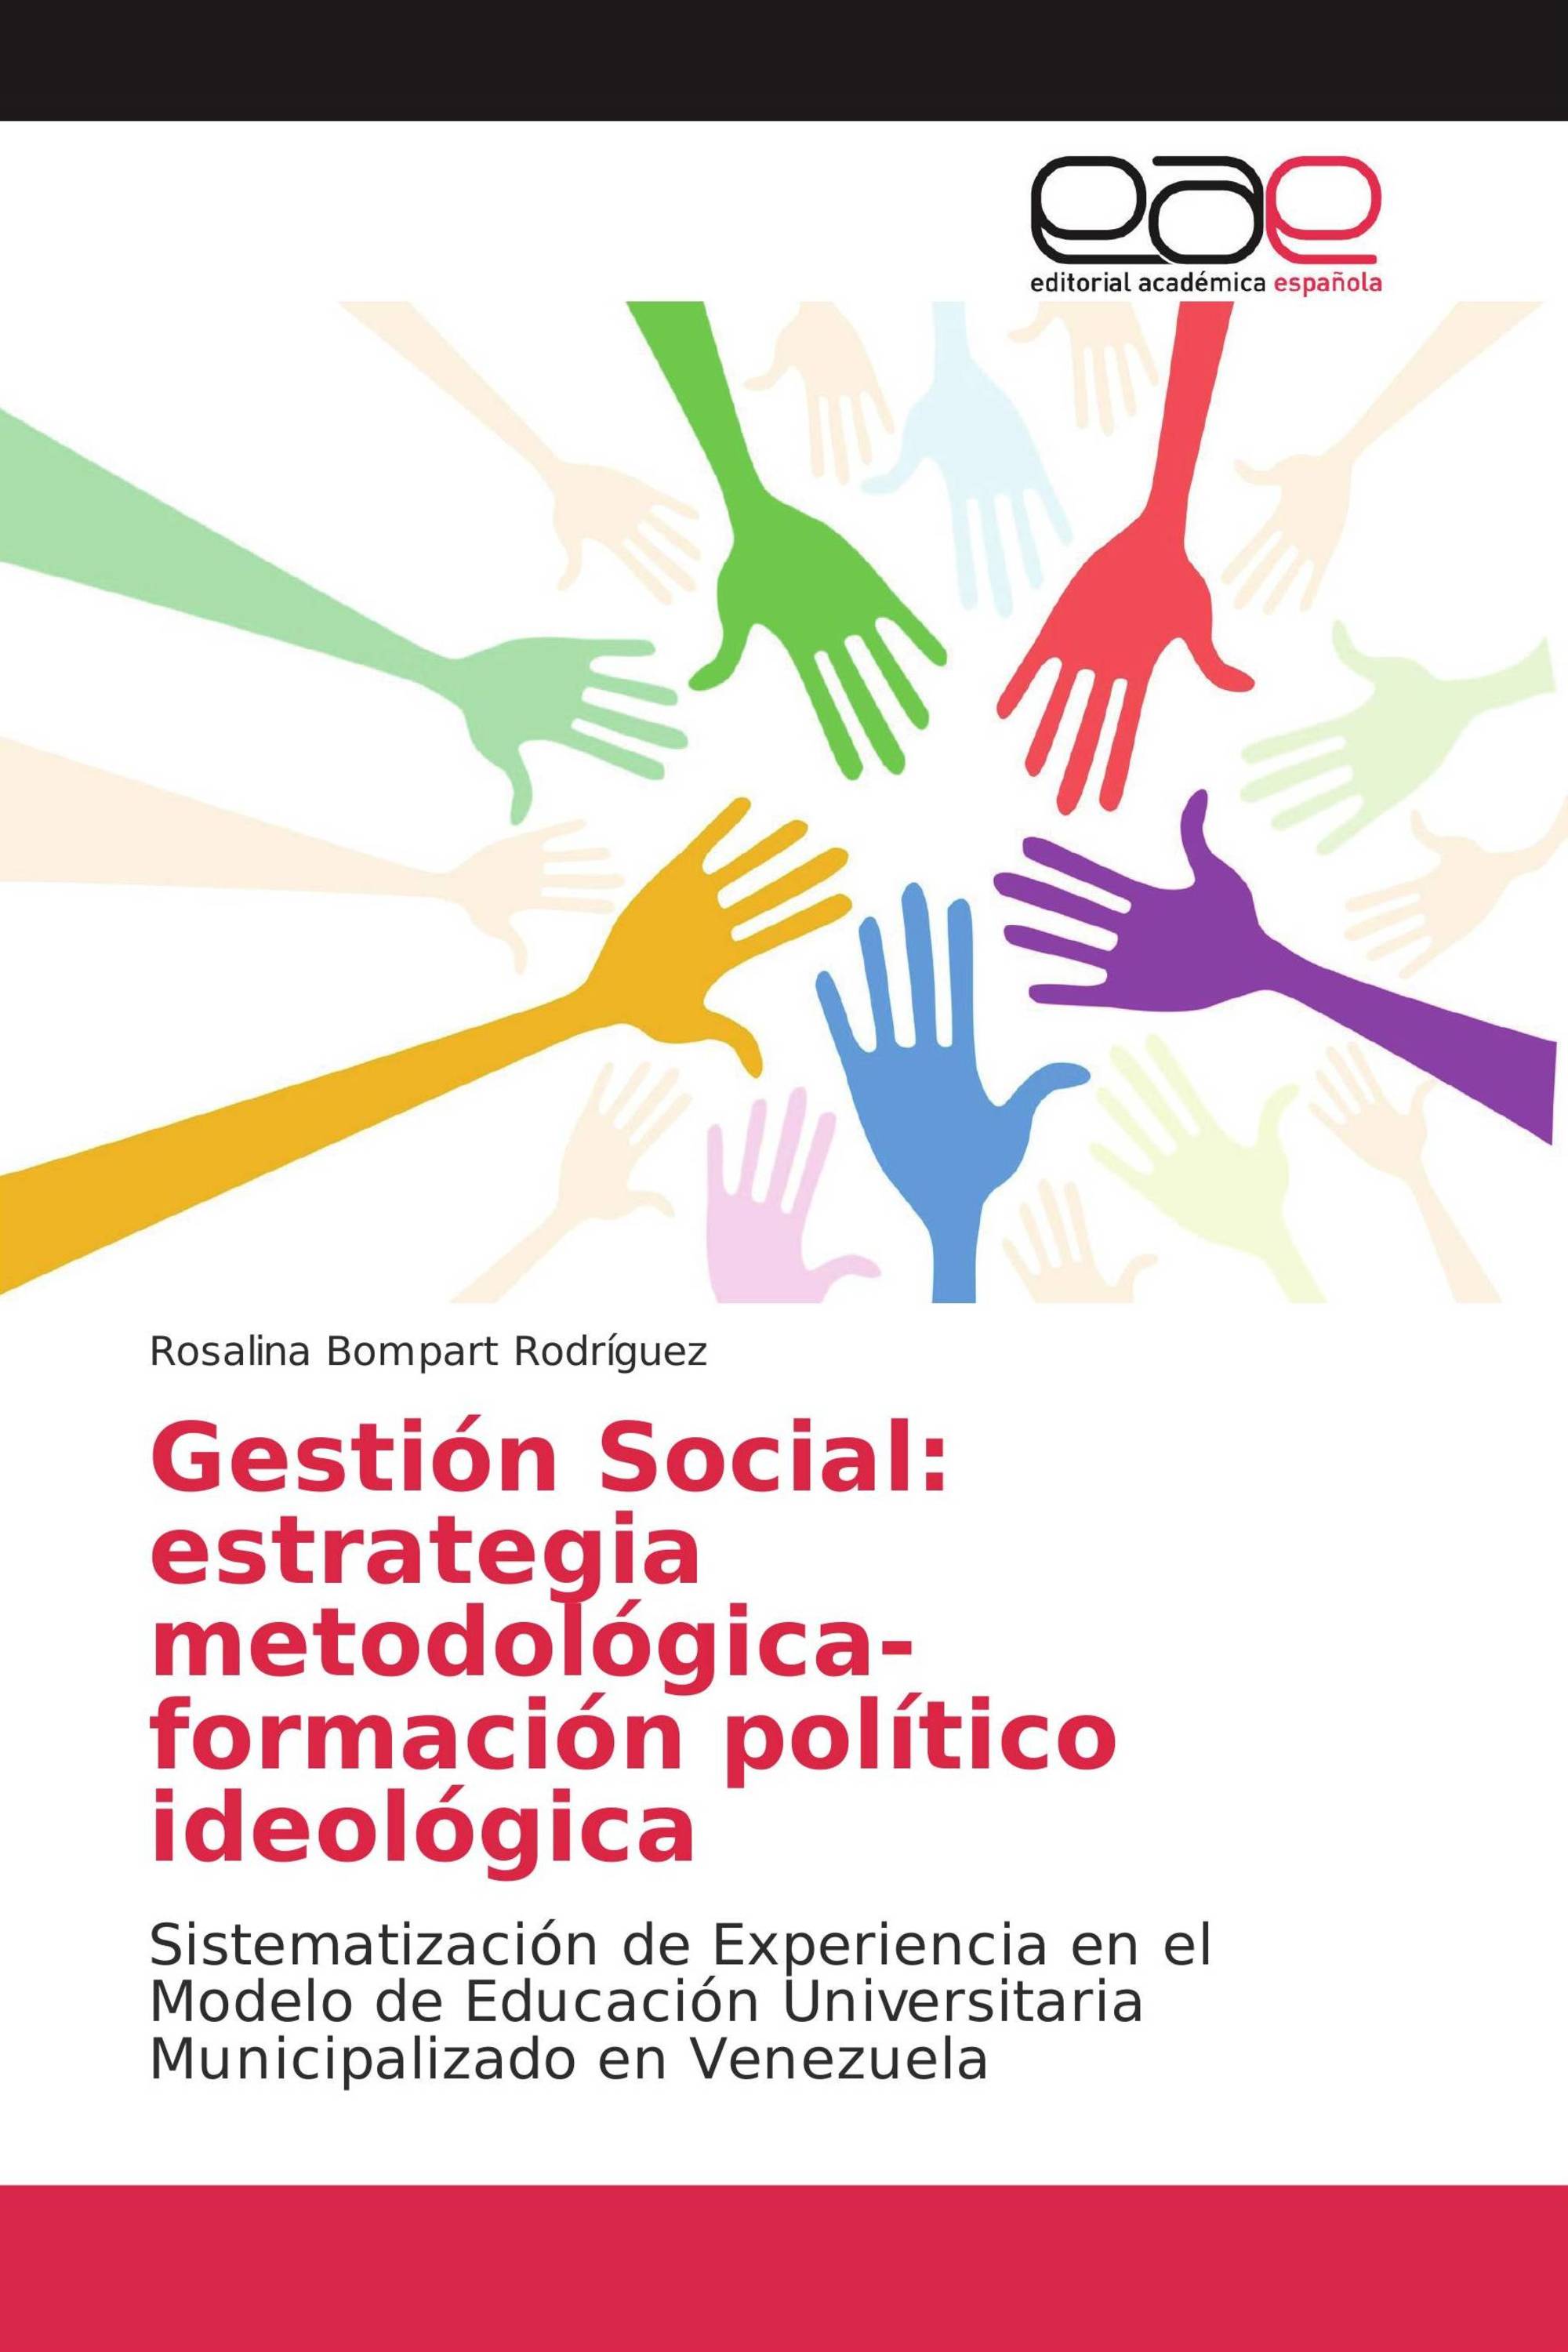 Gestión Social: estrategia metodológica-formación político ideológica